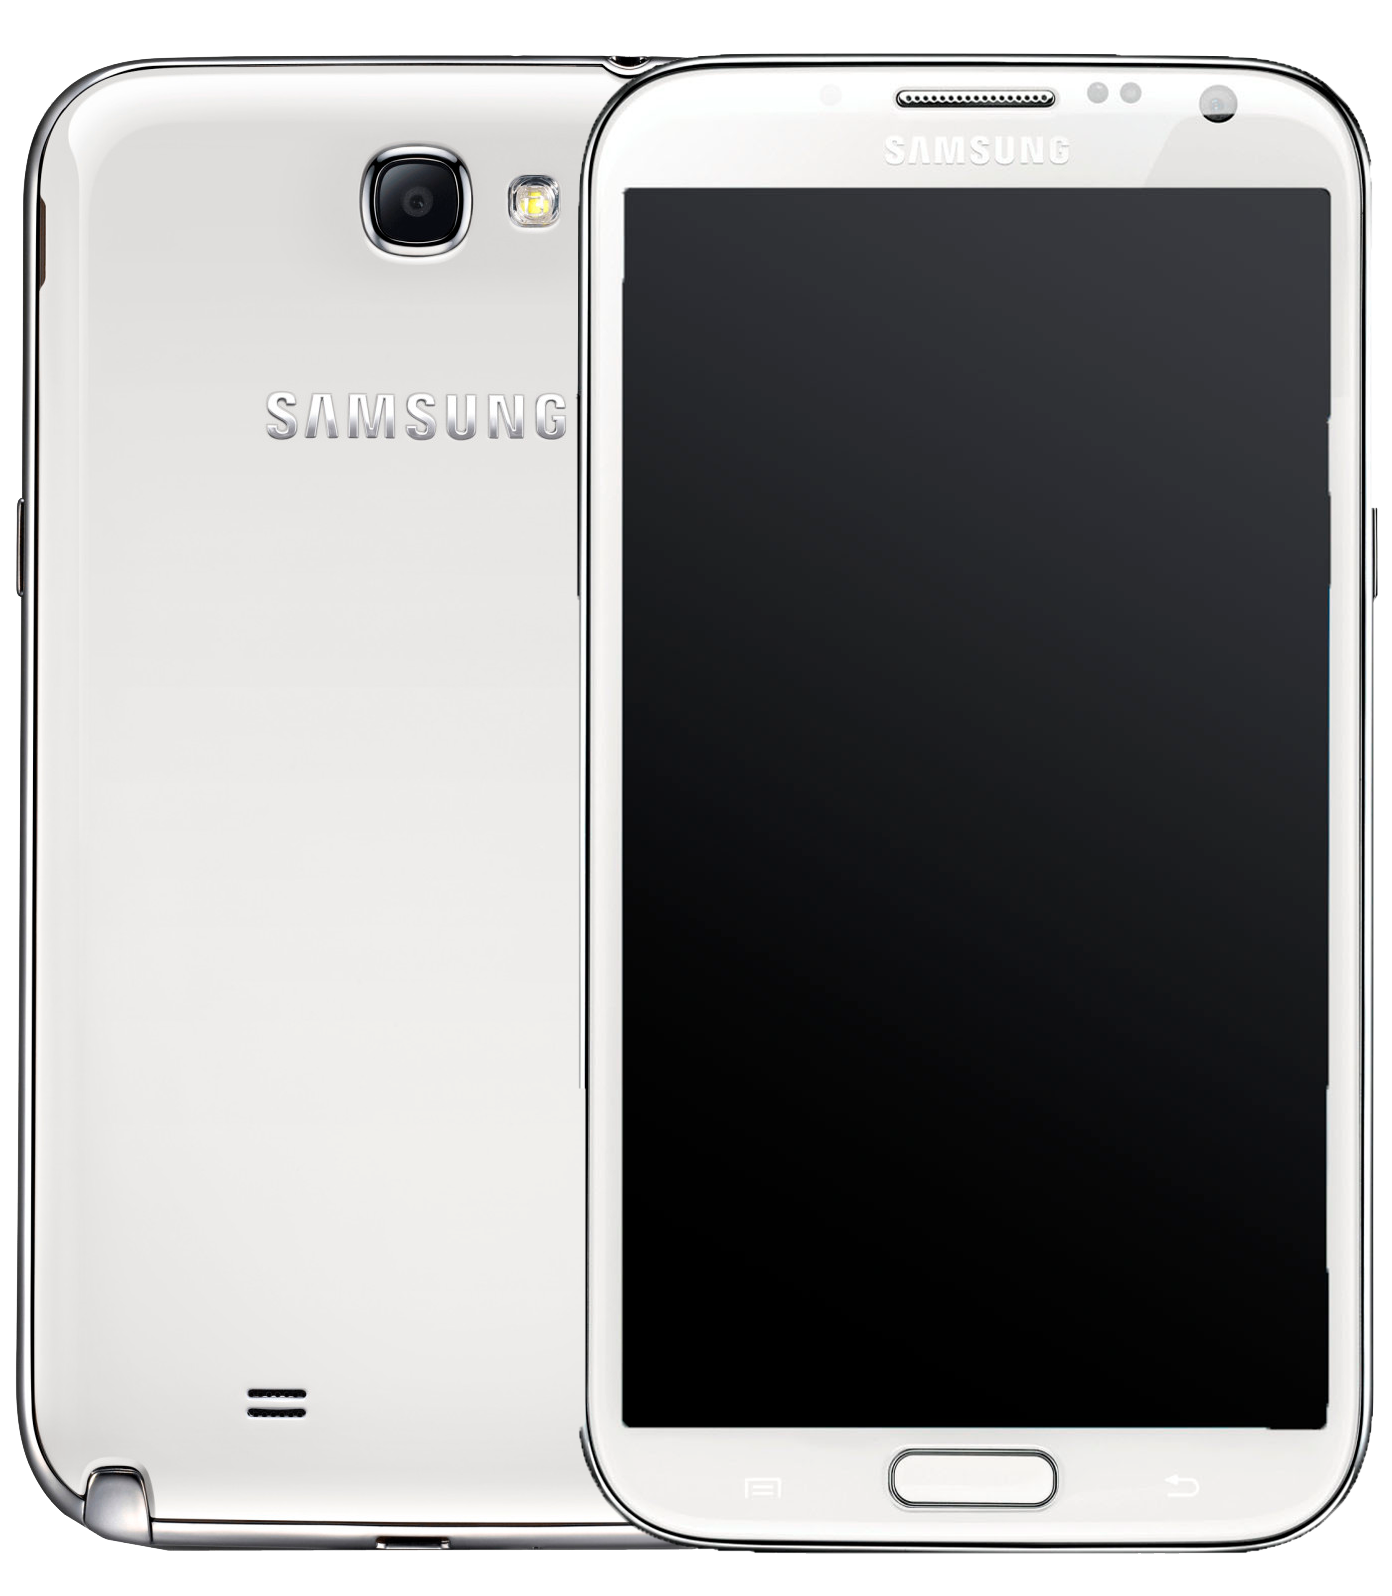 Samsung Galaxy Note 2 LTE GT-N7105 weiß - Ohne Vertrag